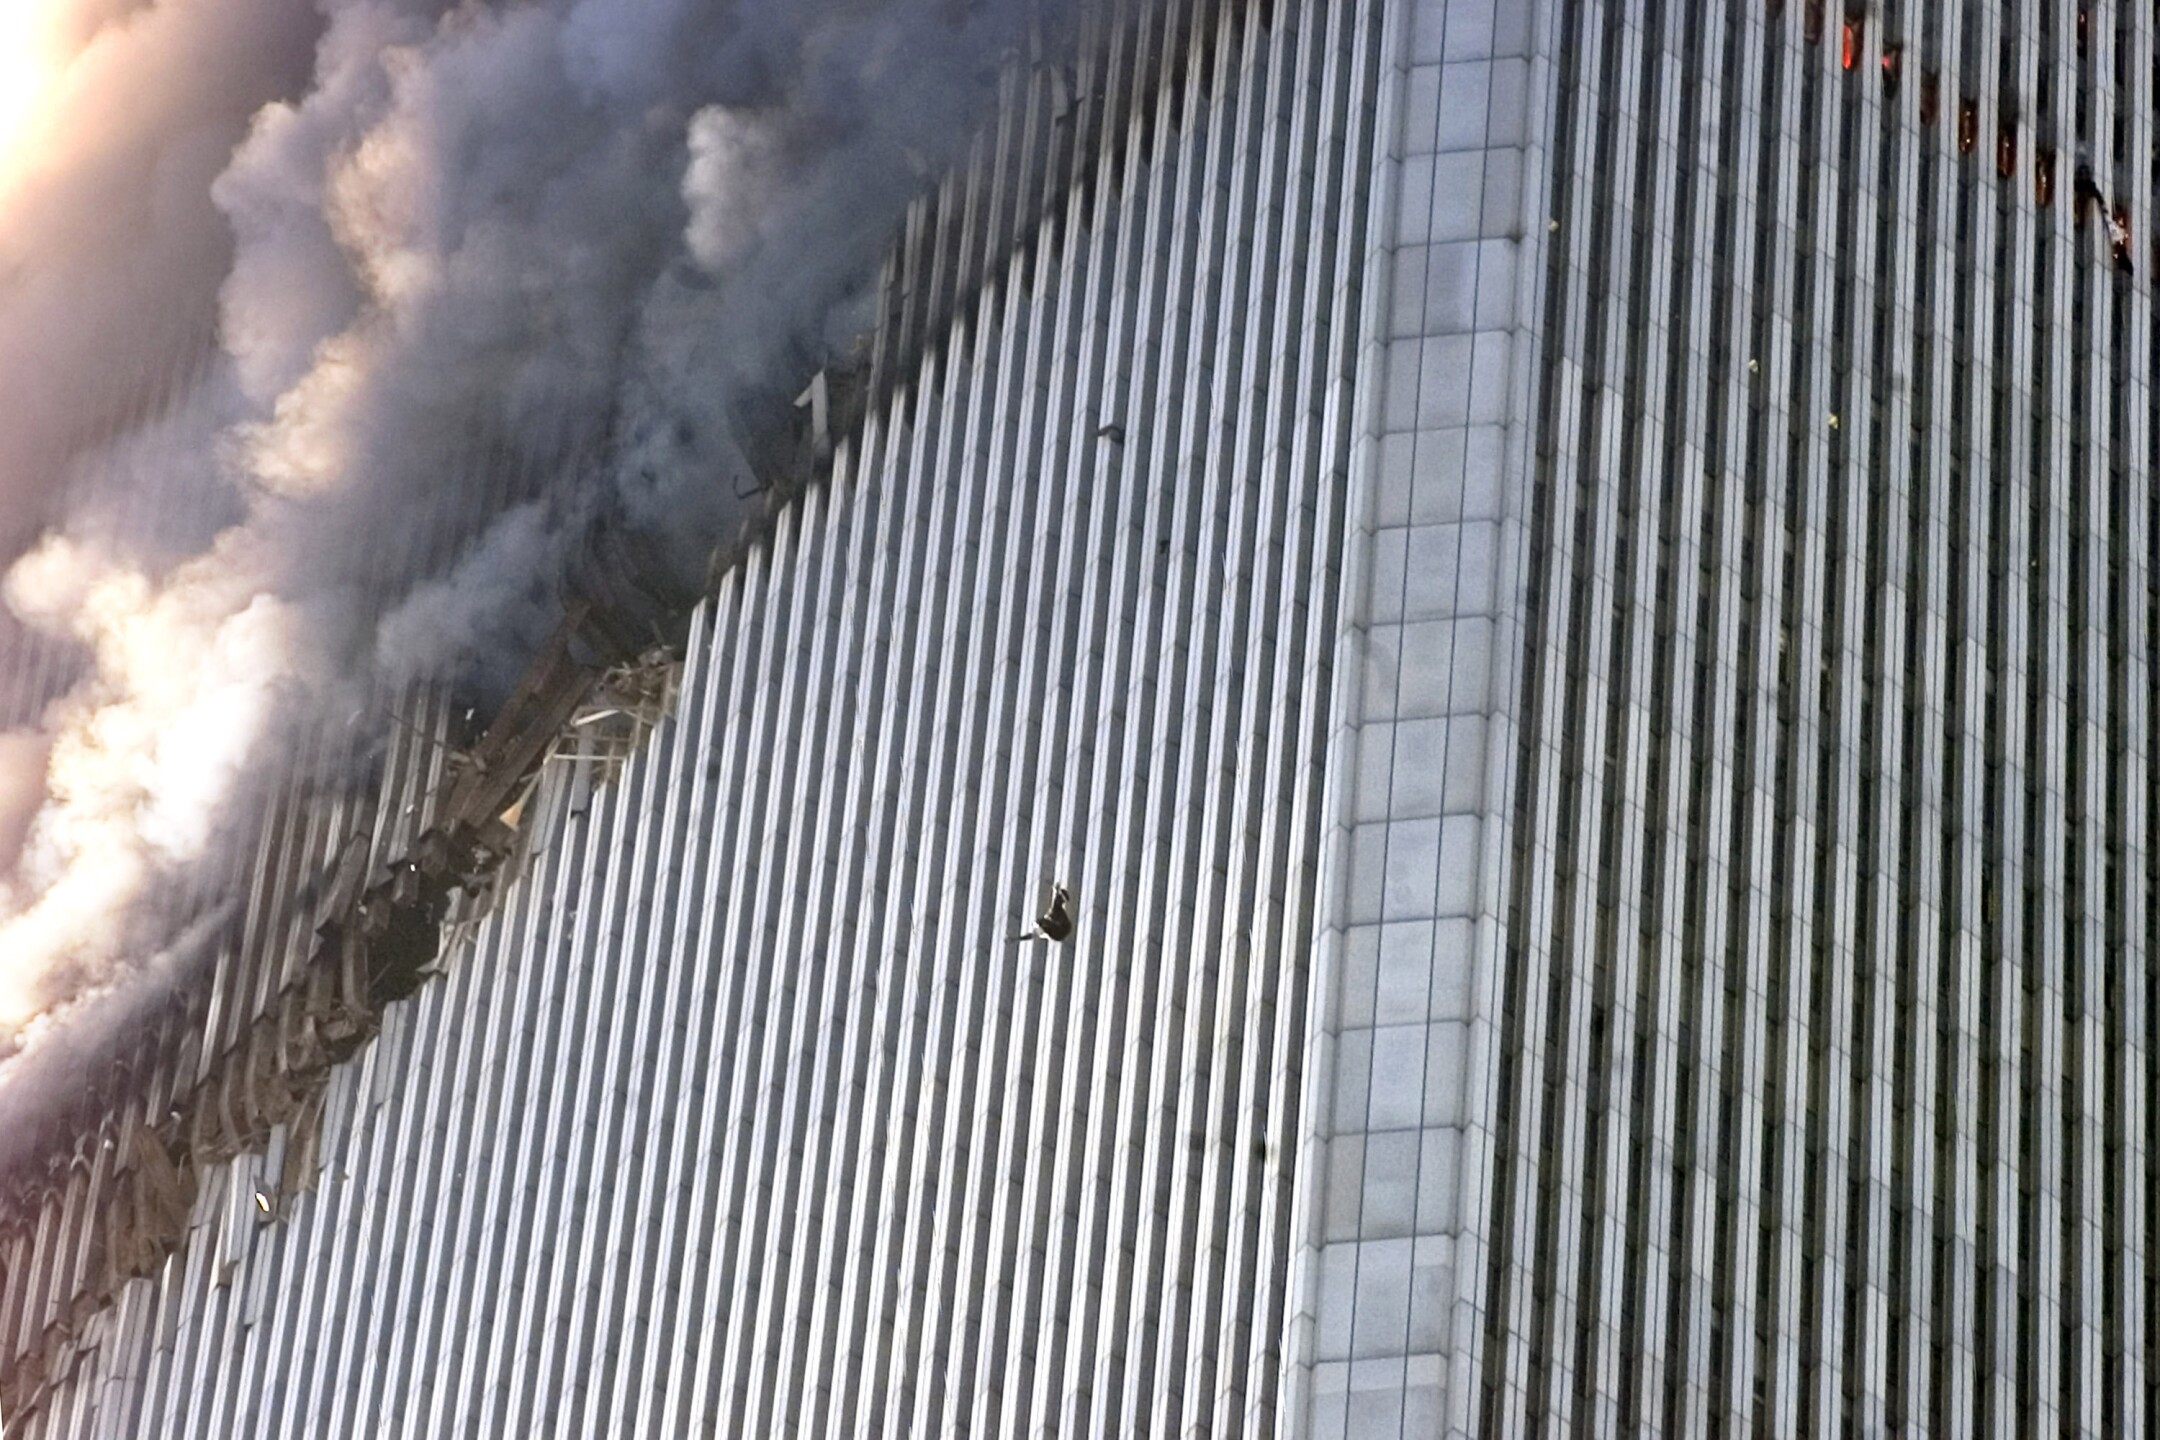 Сколько этажей было в башнях близнецах. Башни ВТЦ 11 сентября 2001. Северная башня ВТЦ 11 сентября. ВТЦ Нью-Йорк башни Близнецы 2001. Всемирный торговый центр в Нью-Йорке 11 сентября.